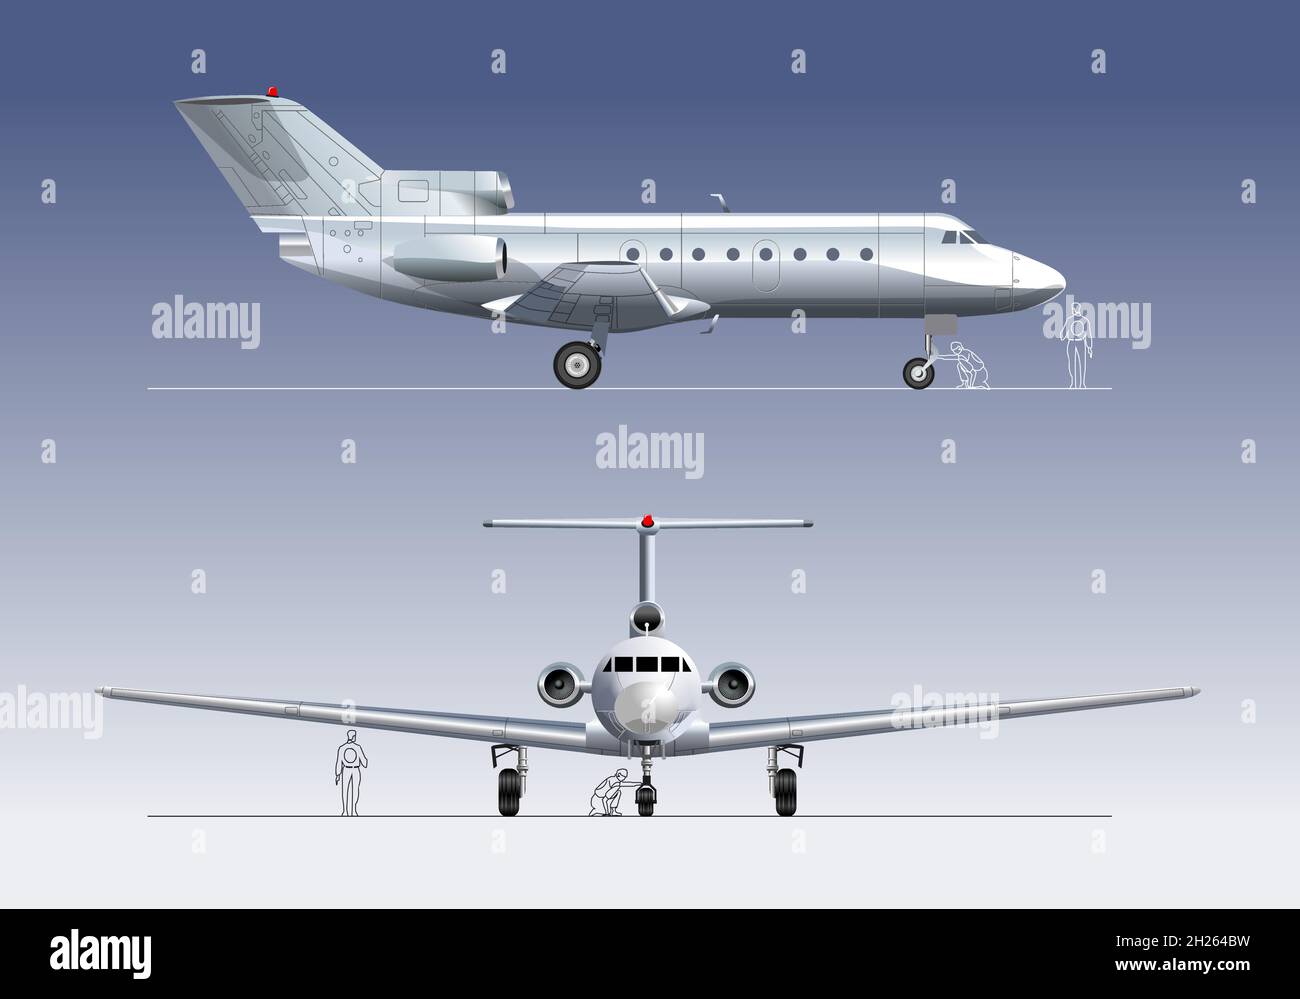 Avion civil.Format vectoriel EPS-10 disponible, séparé par des groupes et des calques, pour un montage facile Illustration de Vecteur